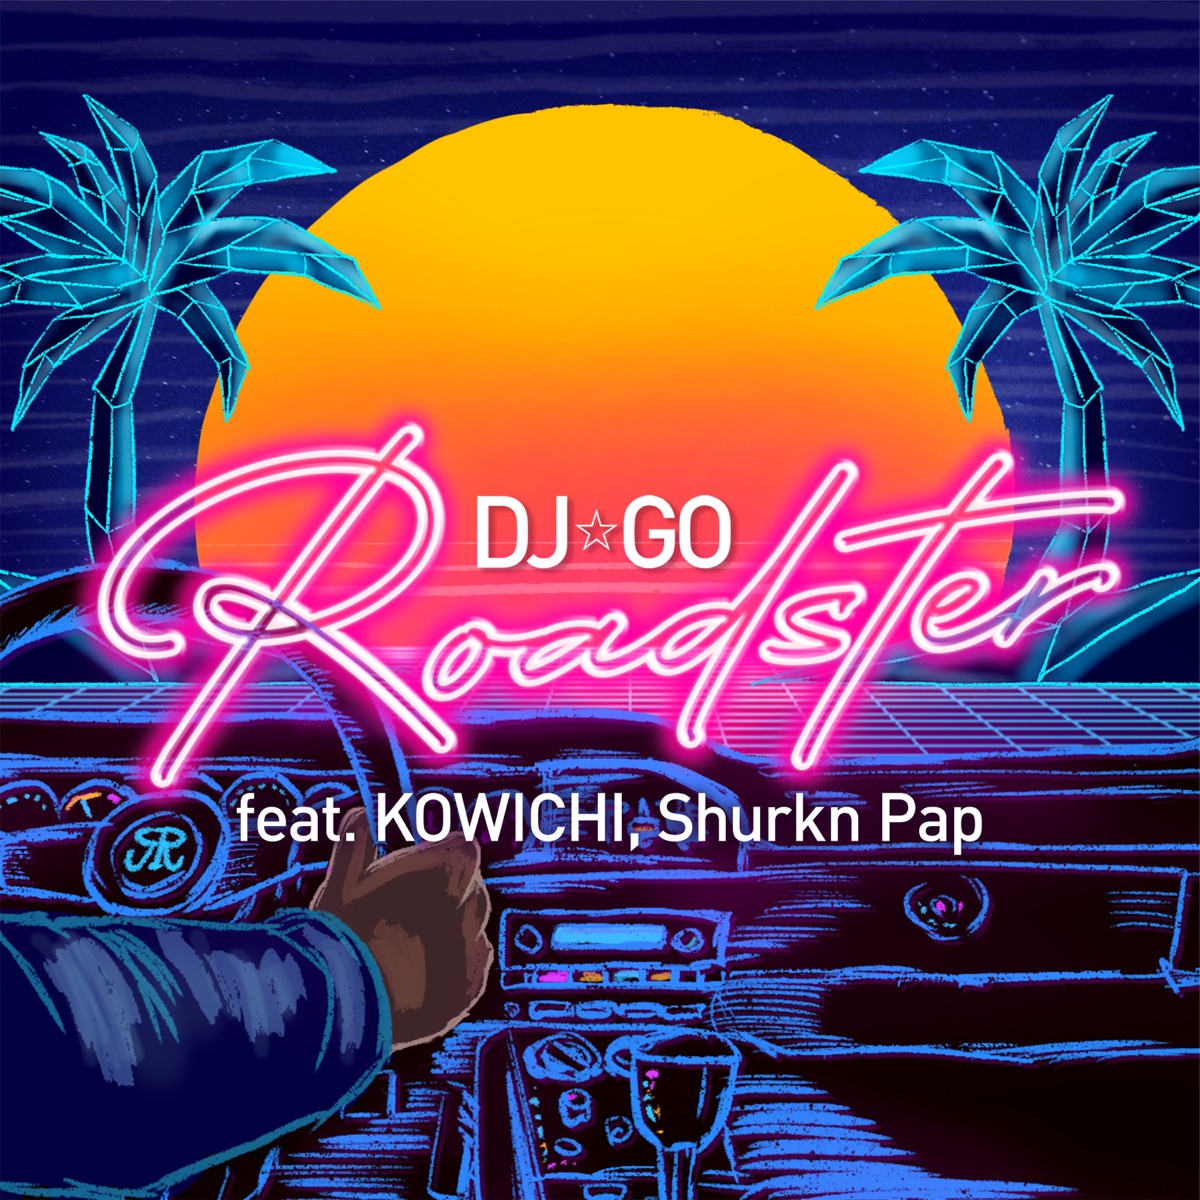 『DJ☆GO - Roadster feat. KOWICHI, Shurkn Pap』収録の『Roadster feat. KOWICHI, Shurkn Pap』ジャケット